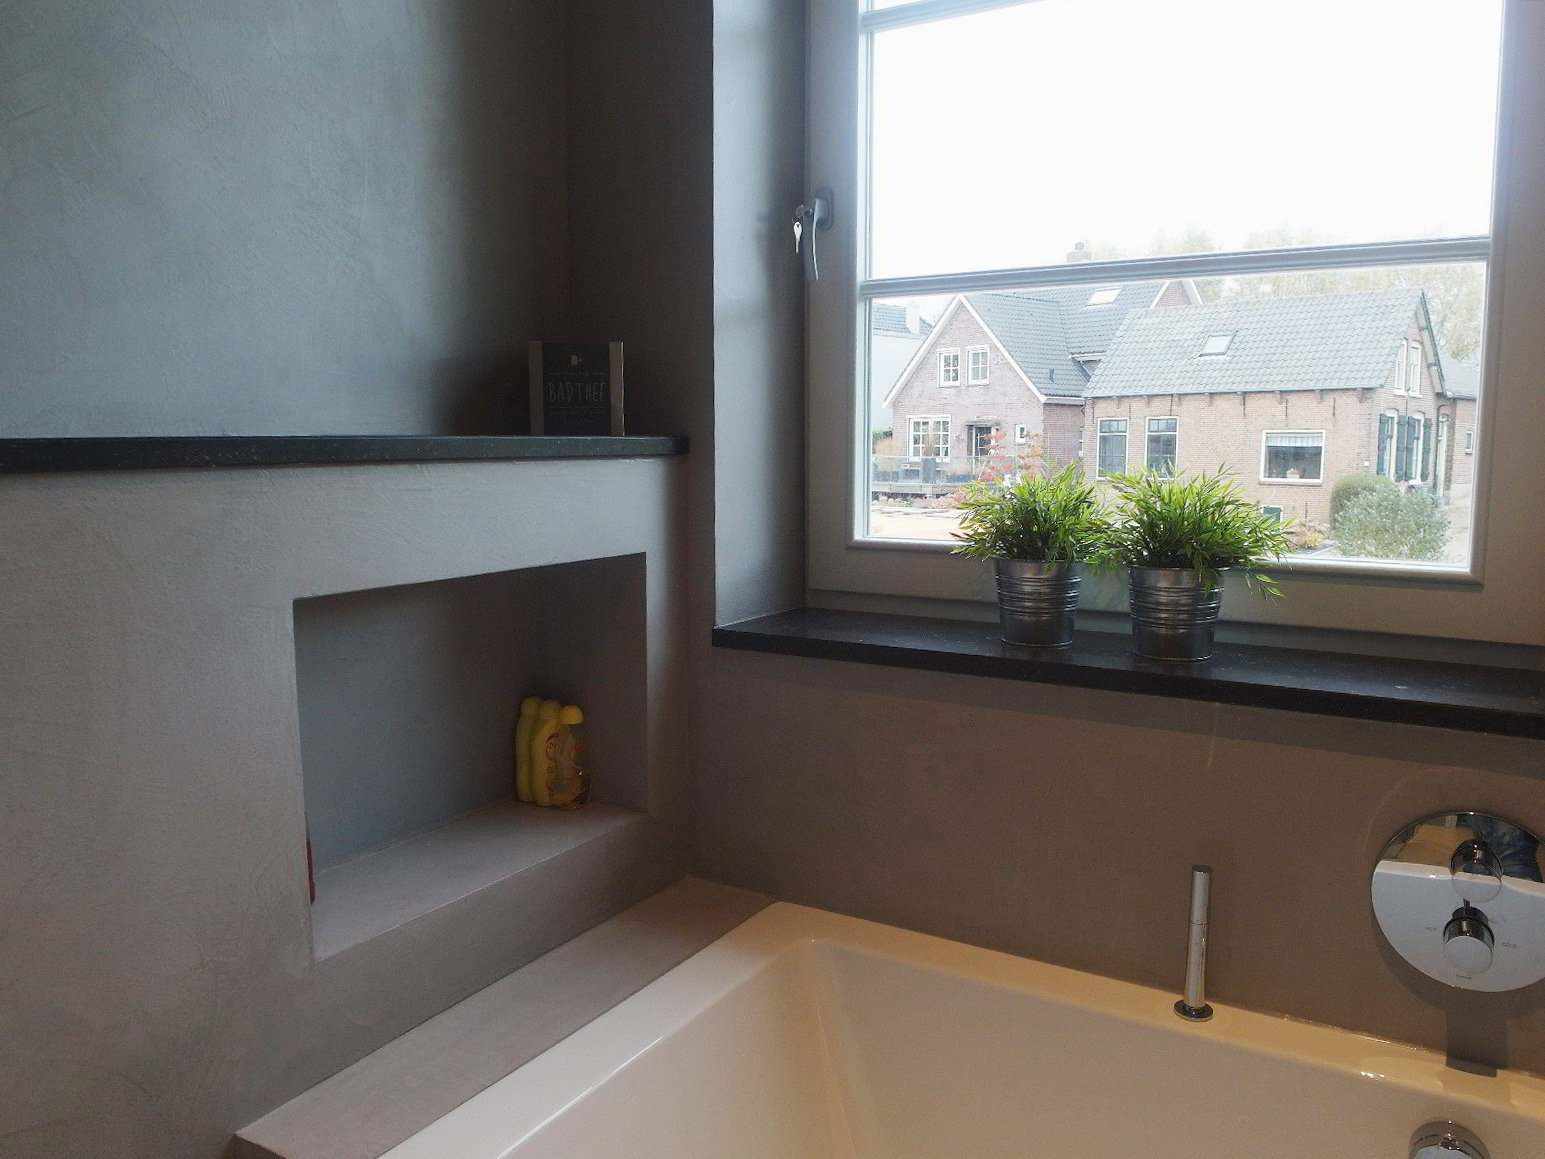 Microciment sur le mur, le sol et le meuble d'une salle de bain en Hollande dans le projet Decas.